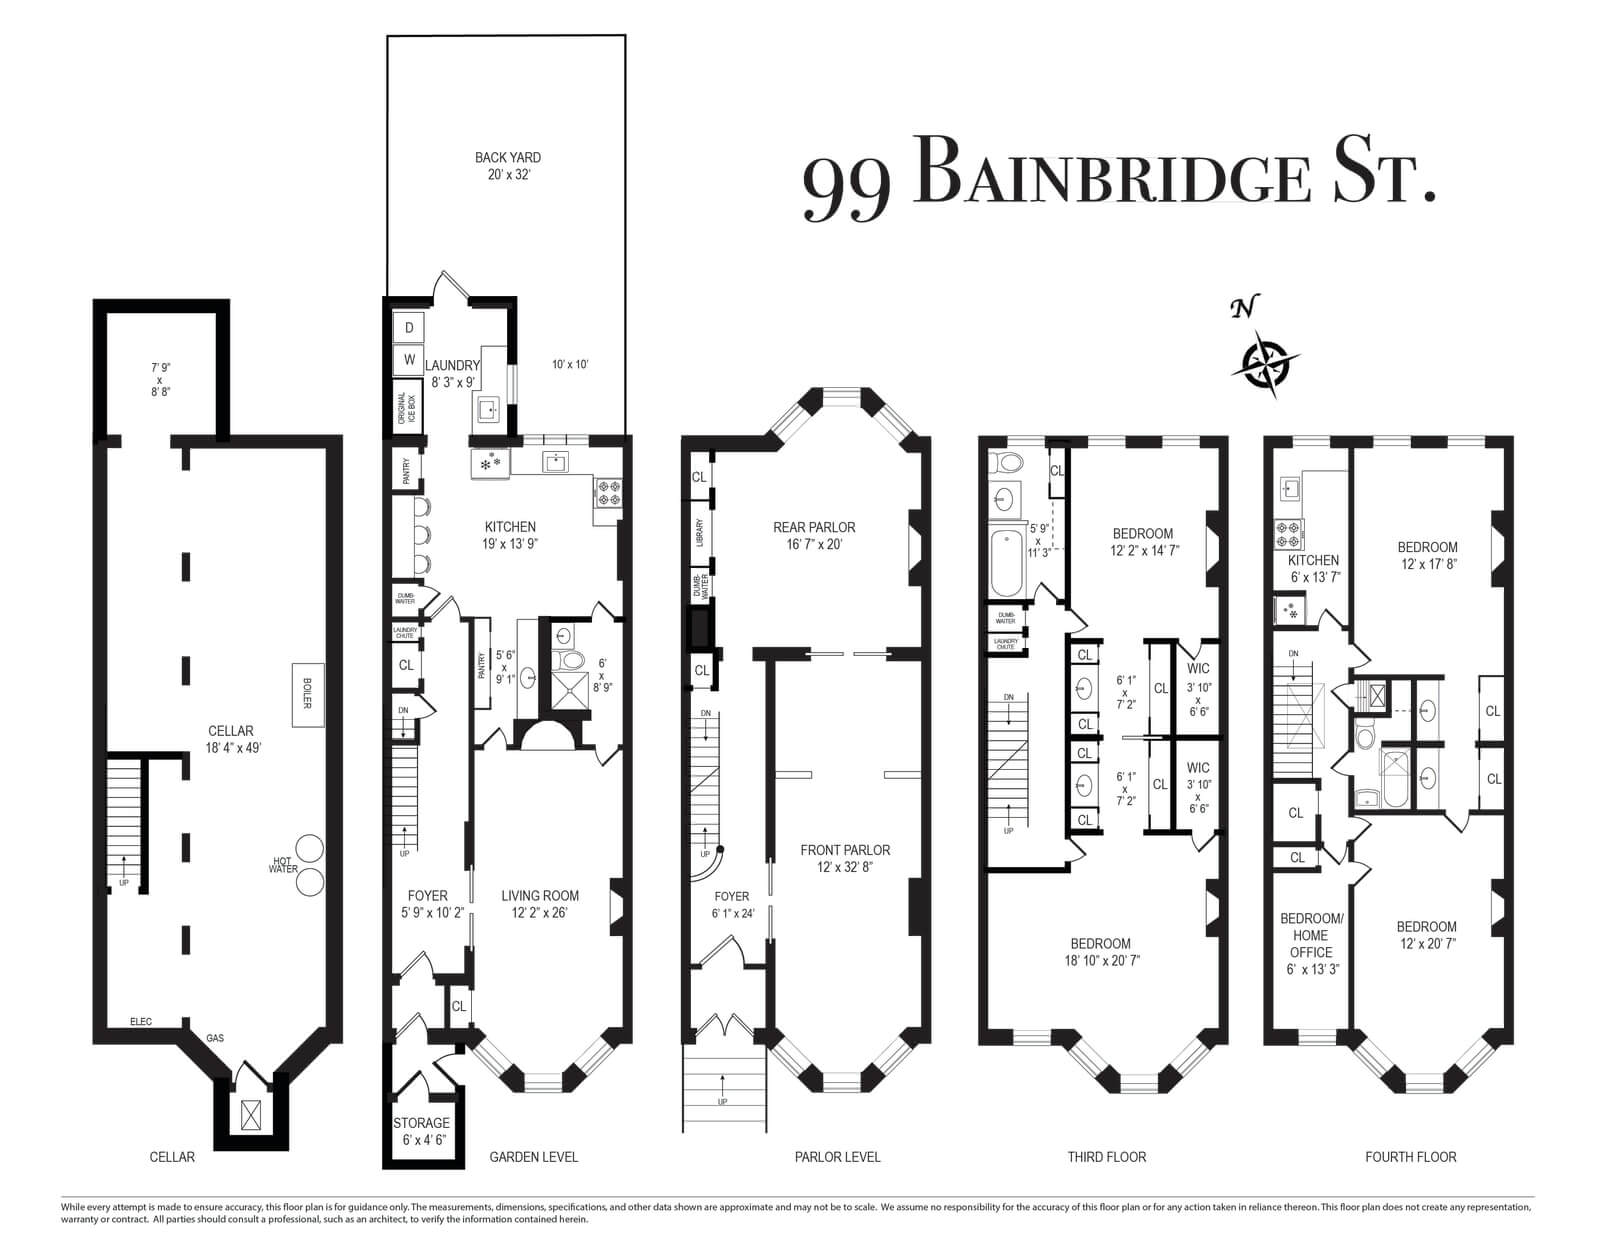 floorplan of 99 bainbridge street